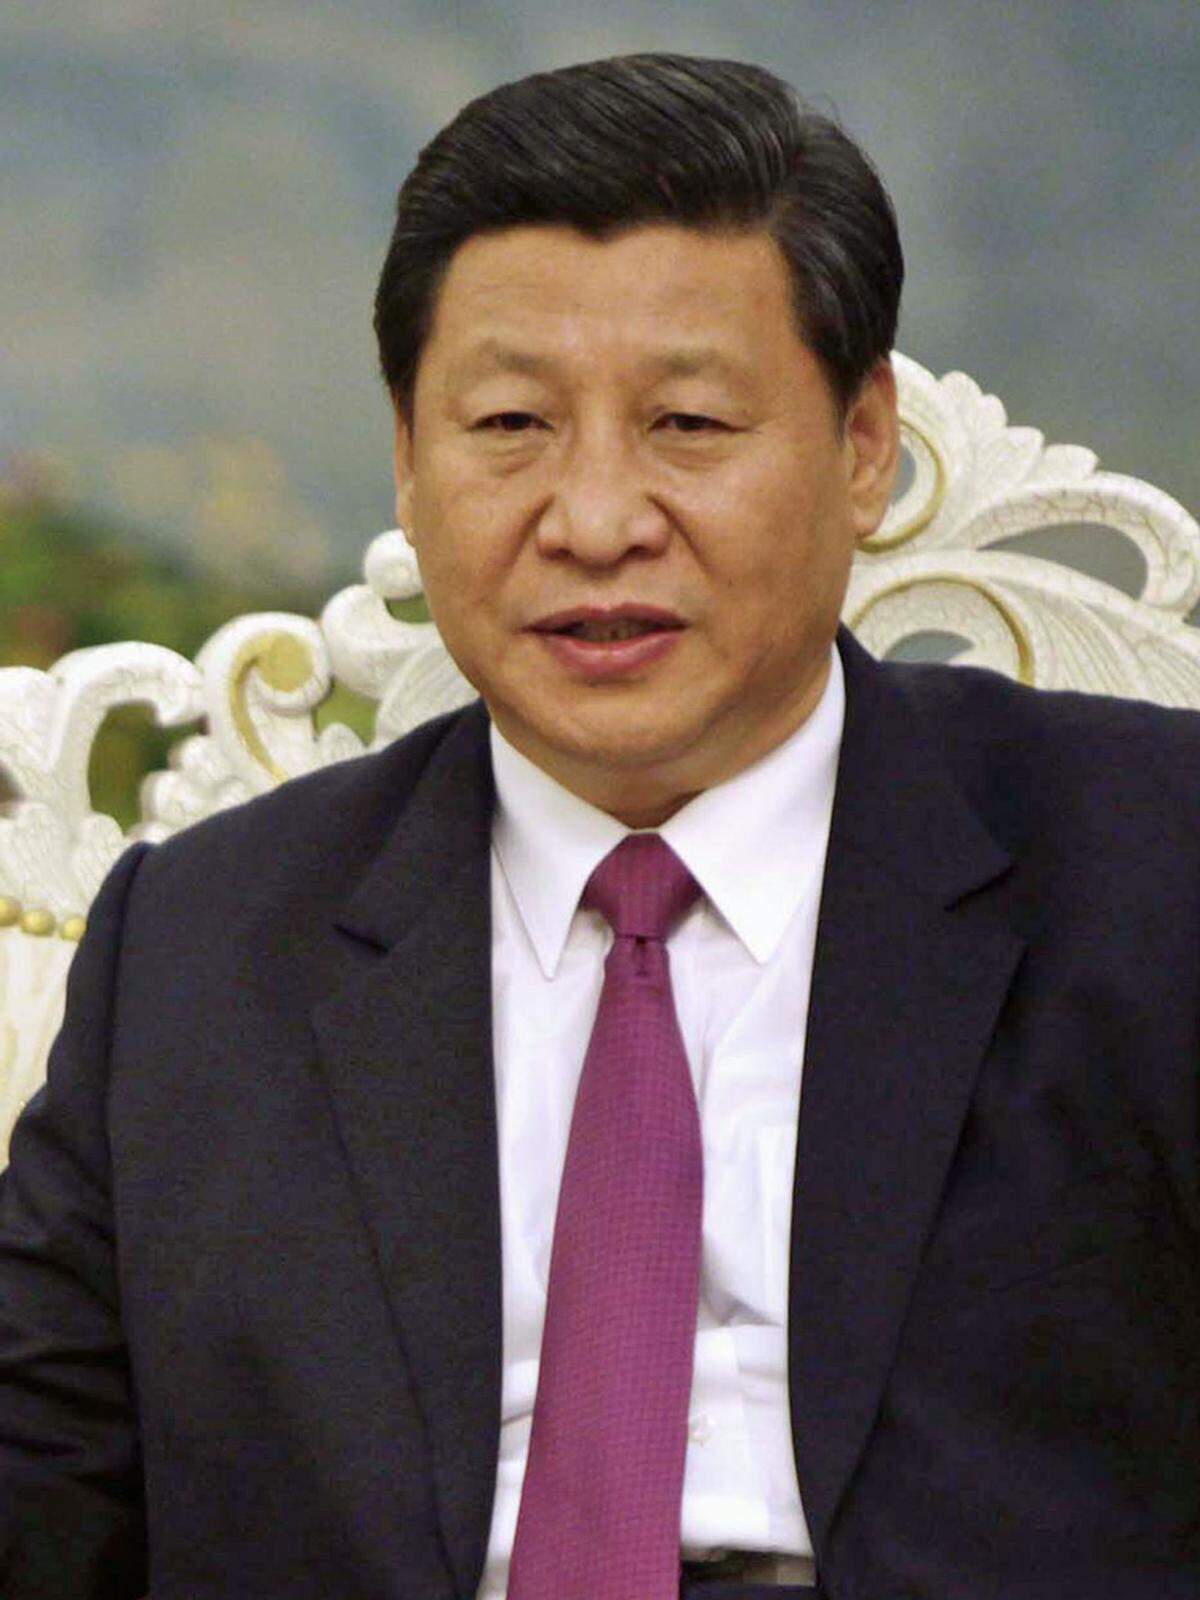 Fest steht: Mit Xi Jinping (Bild) wird ein "Prinzling" nicht nur im Ständigen Ausschuss sitzen, sondern auch Staatschef Hu als mächtigsten Mann Chinas beerben. Der Vater des 59-jährigen Noch-Vizepräsidenten war einer der Revolutionshelden. Kritiker halten Xi aber für "zu glatt", allzu große Reformen seien von ihm nicht zu erwarten.